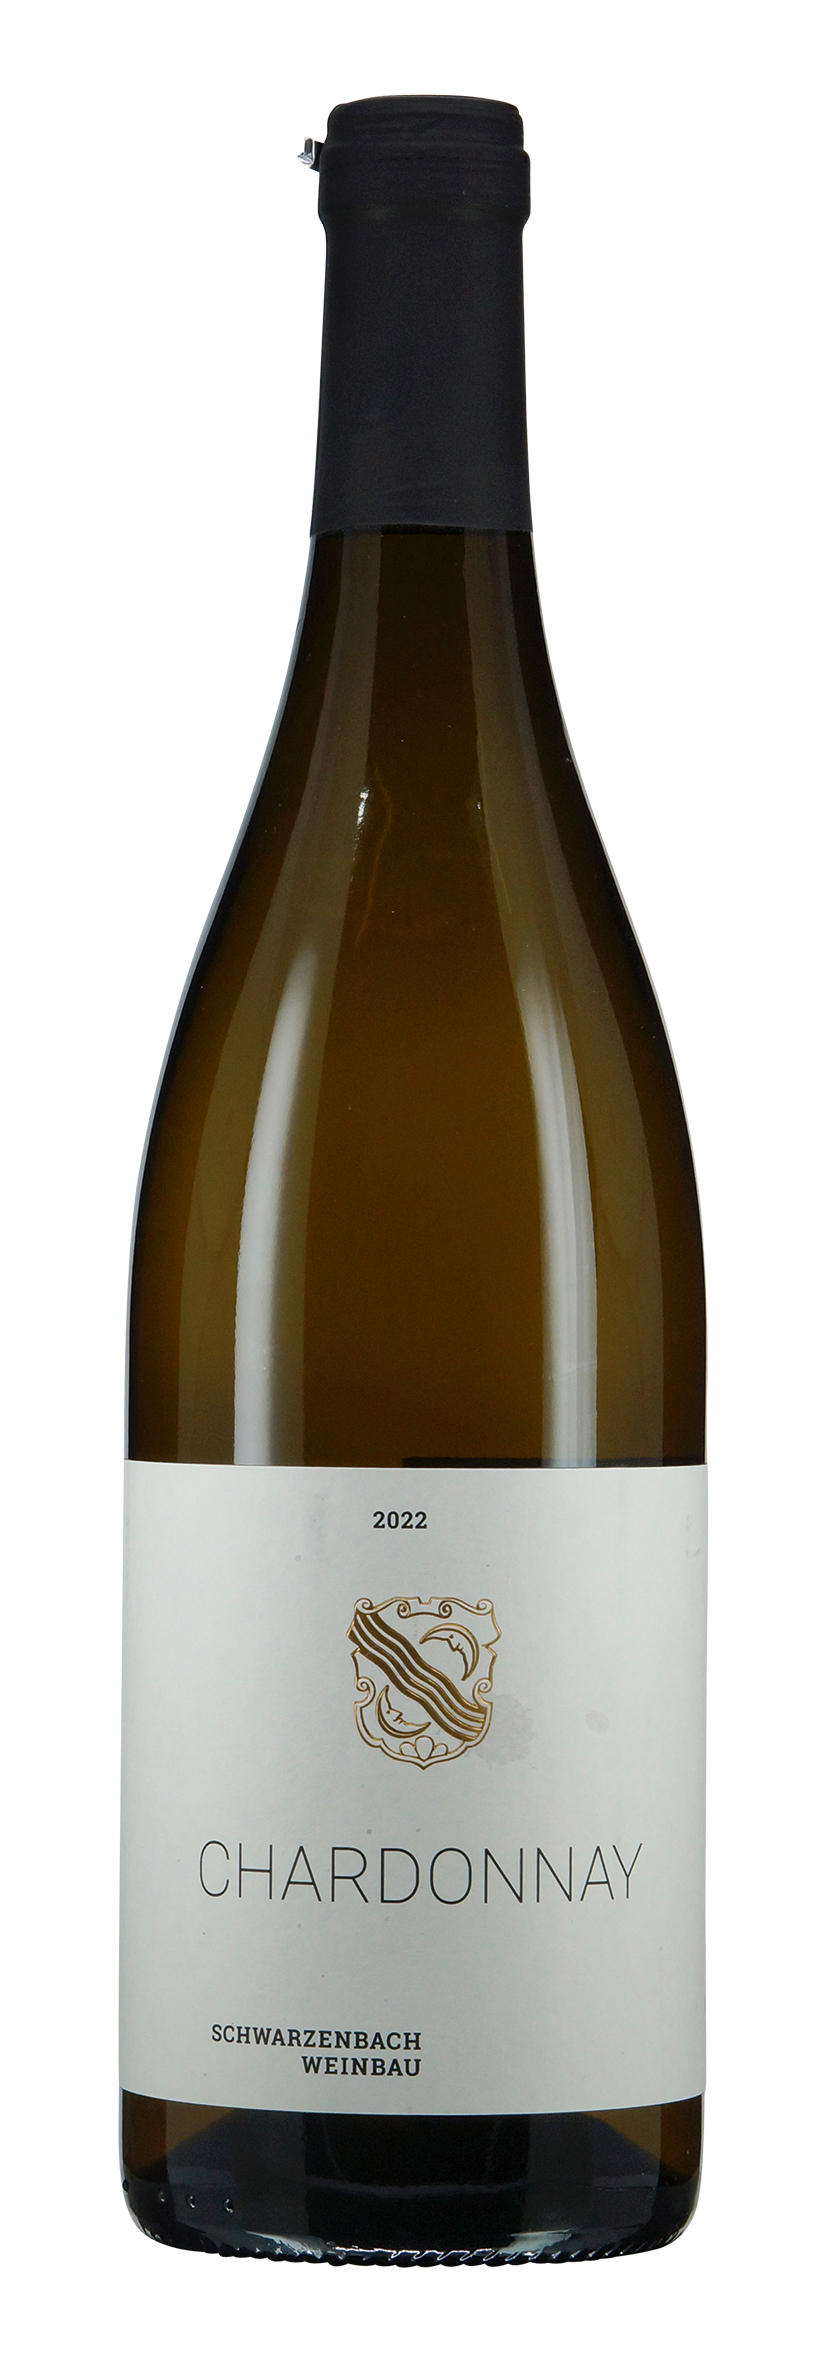 Zürichsee AOC Chardonnay 2022